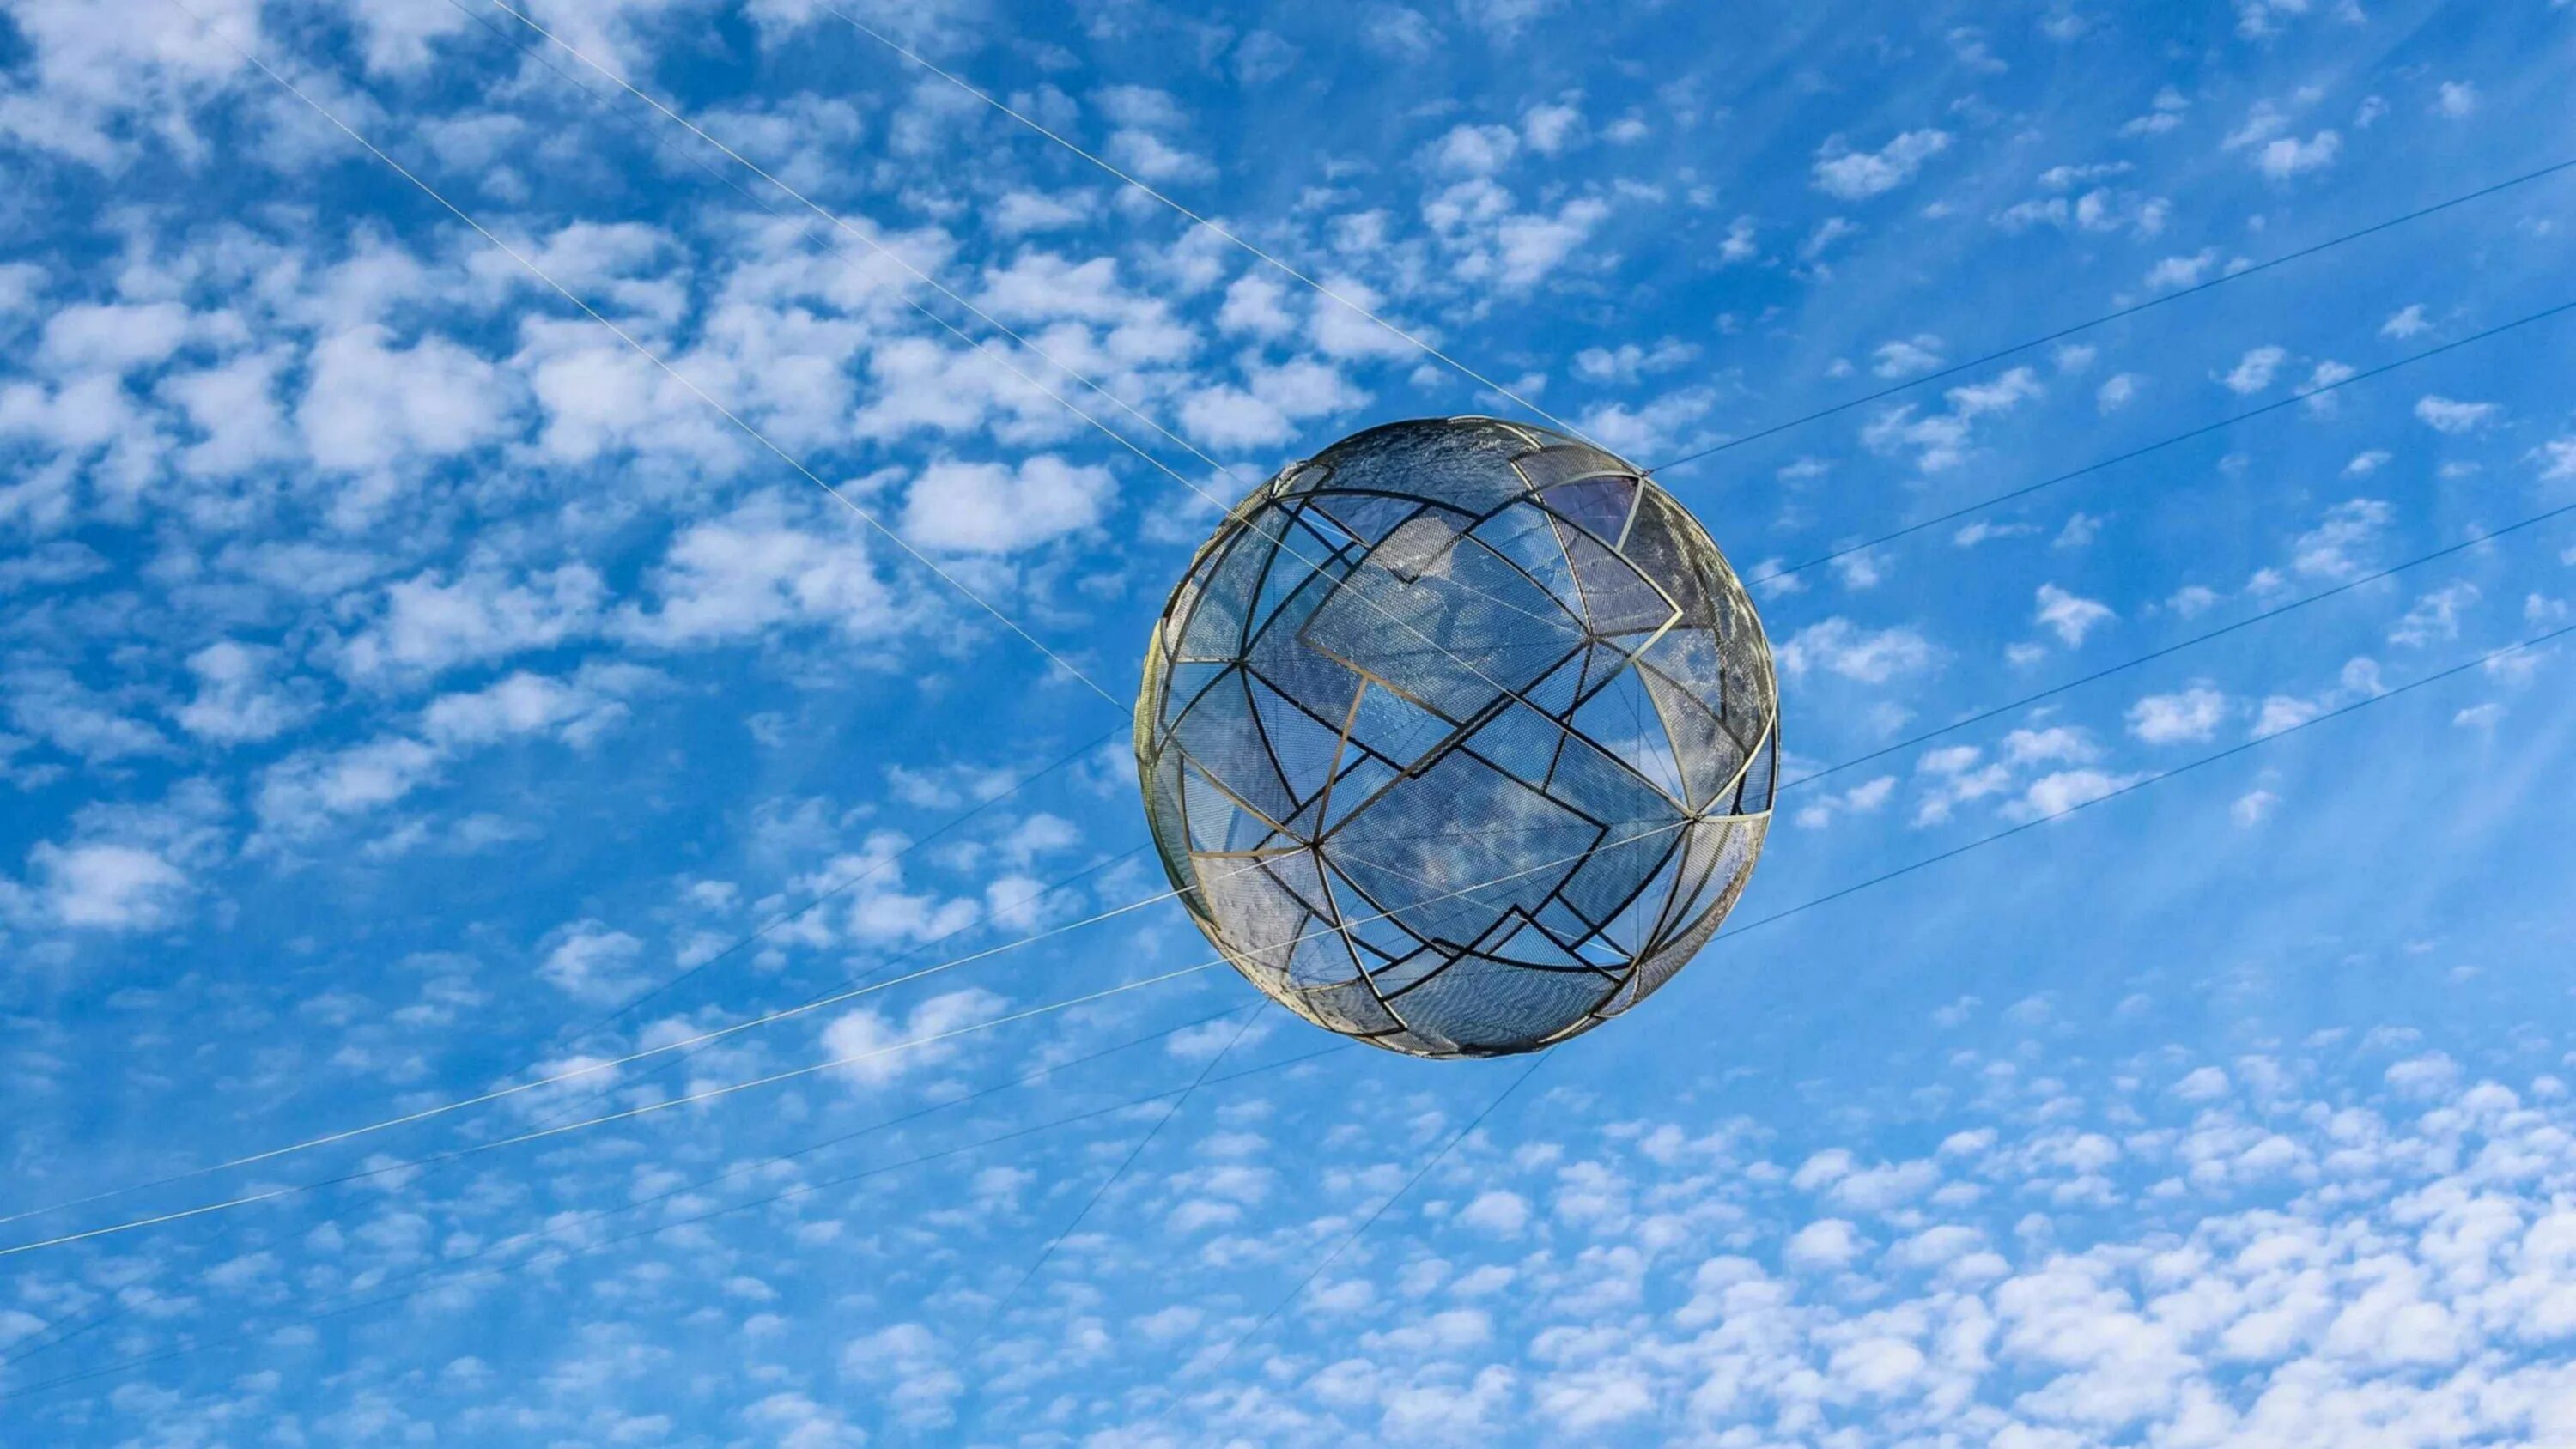 Сетка на шаре. Небесный шар. Шар в небе. Воздушный шар в небе. Облако в форме шара.